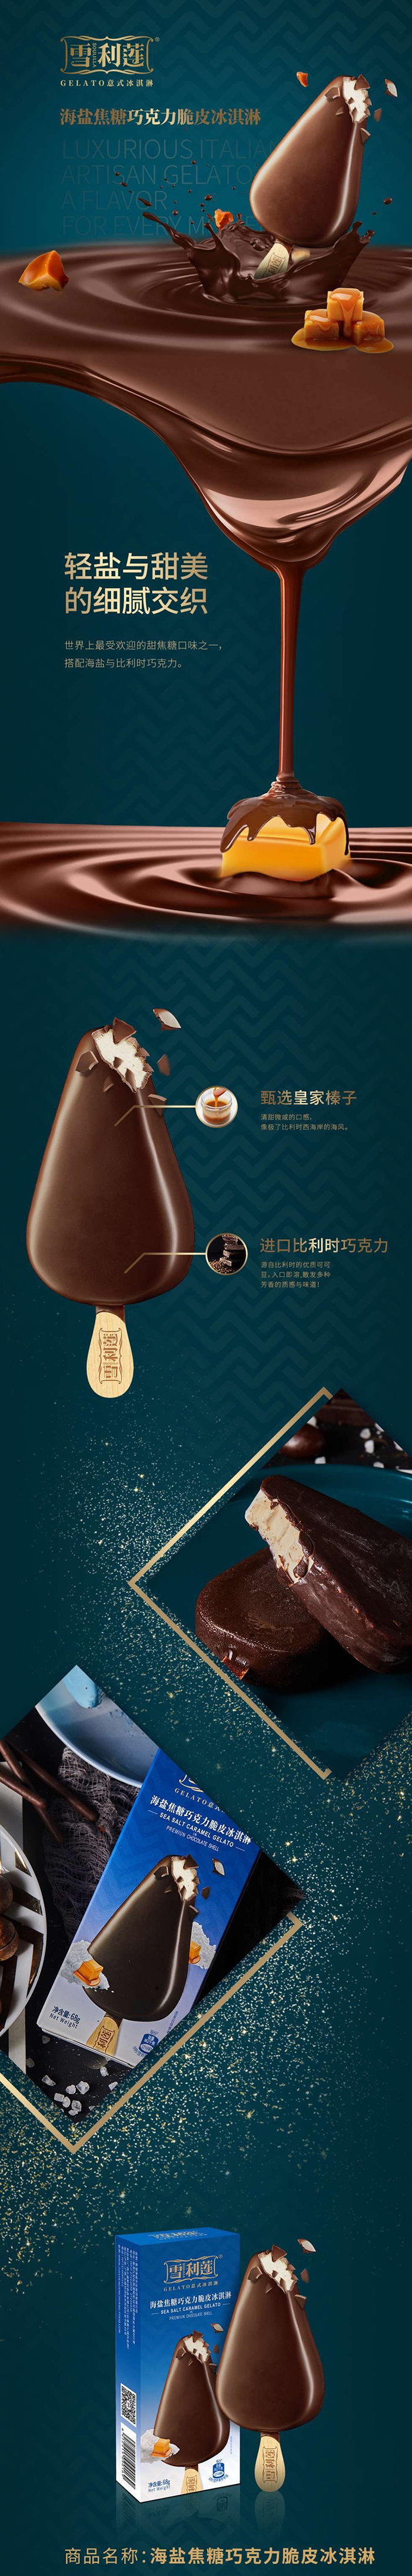 雪利莲 巧克力脆皮冰淇淋系列